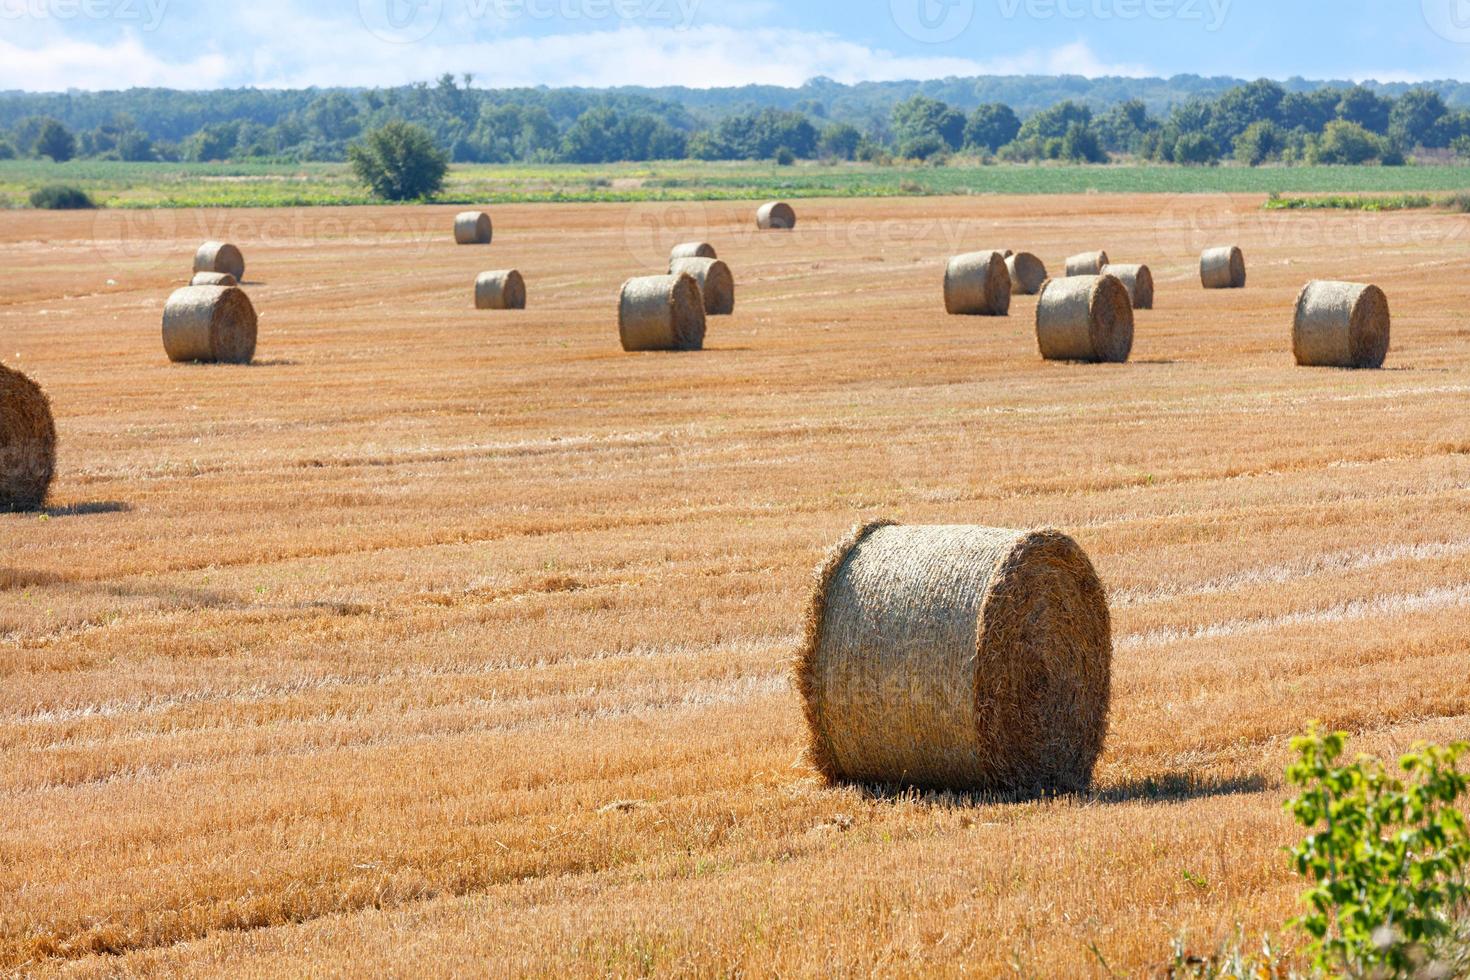 grote balen stro worden na de oogst verspreid over een breed veld en een bewolkte groene horizon. foto